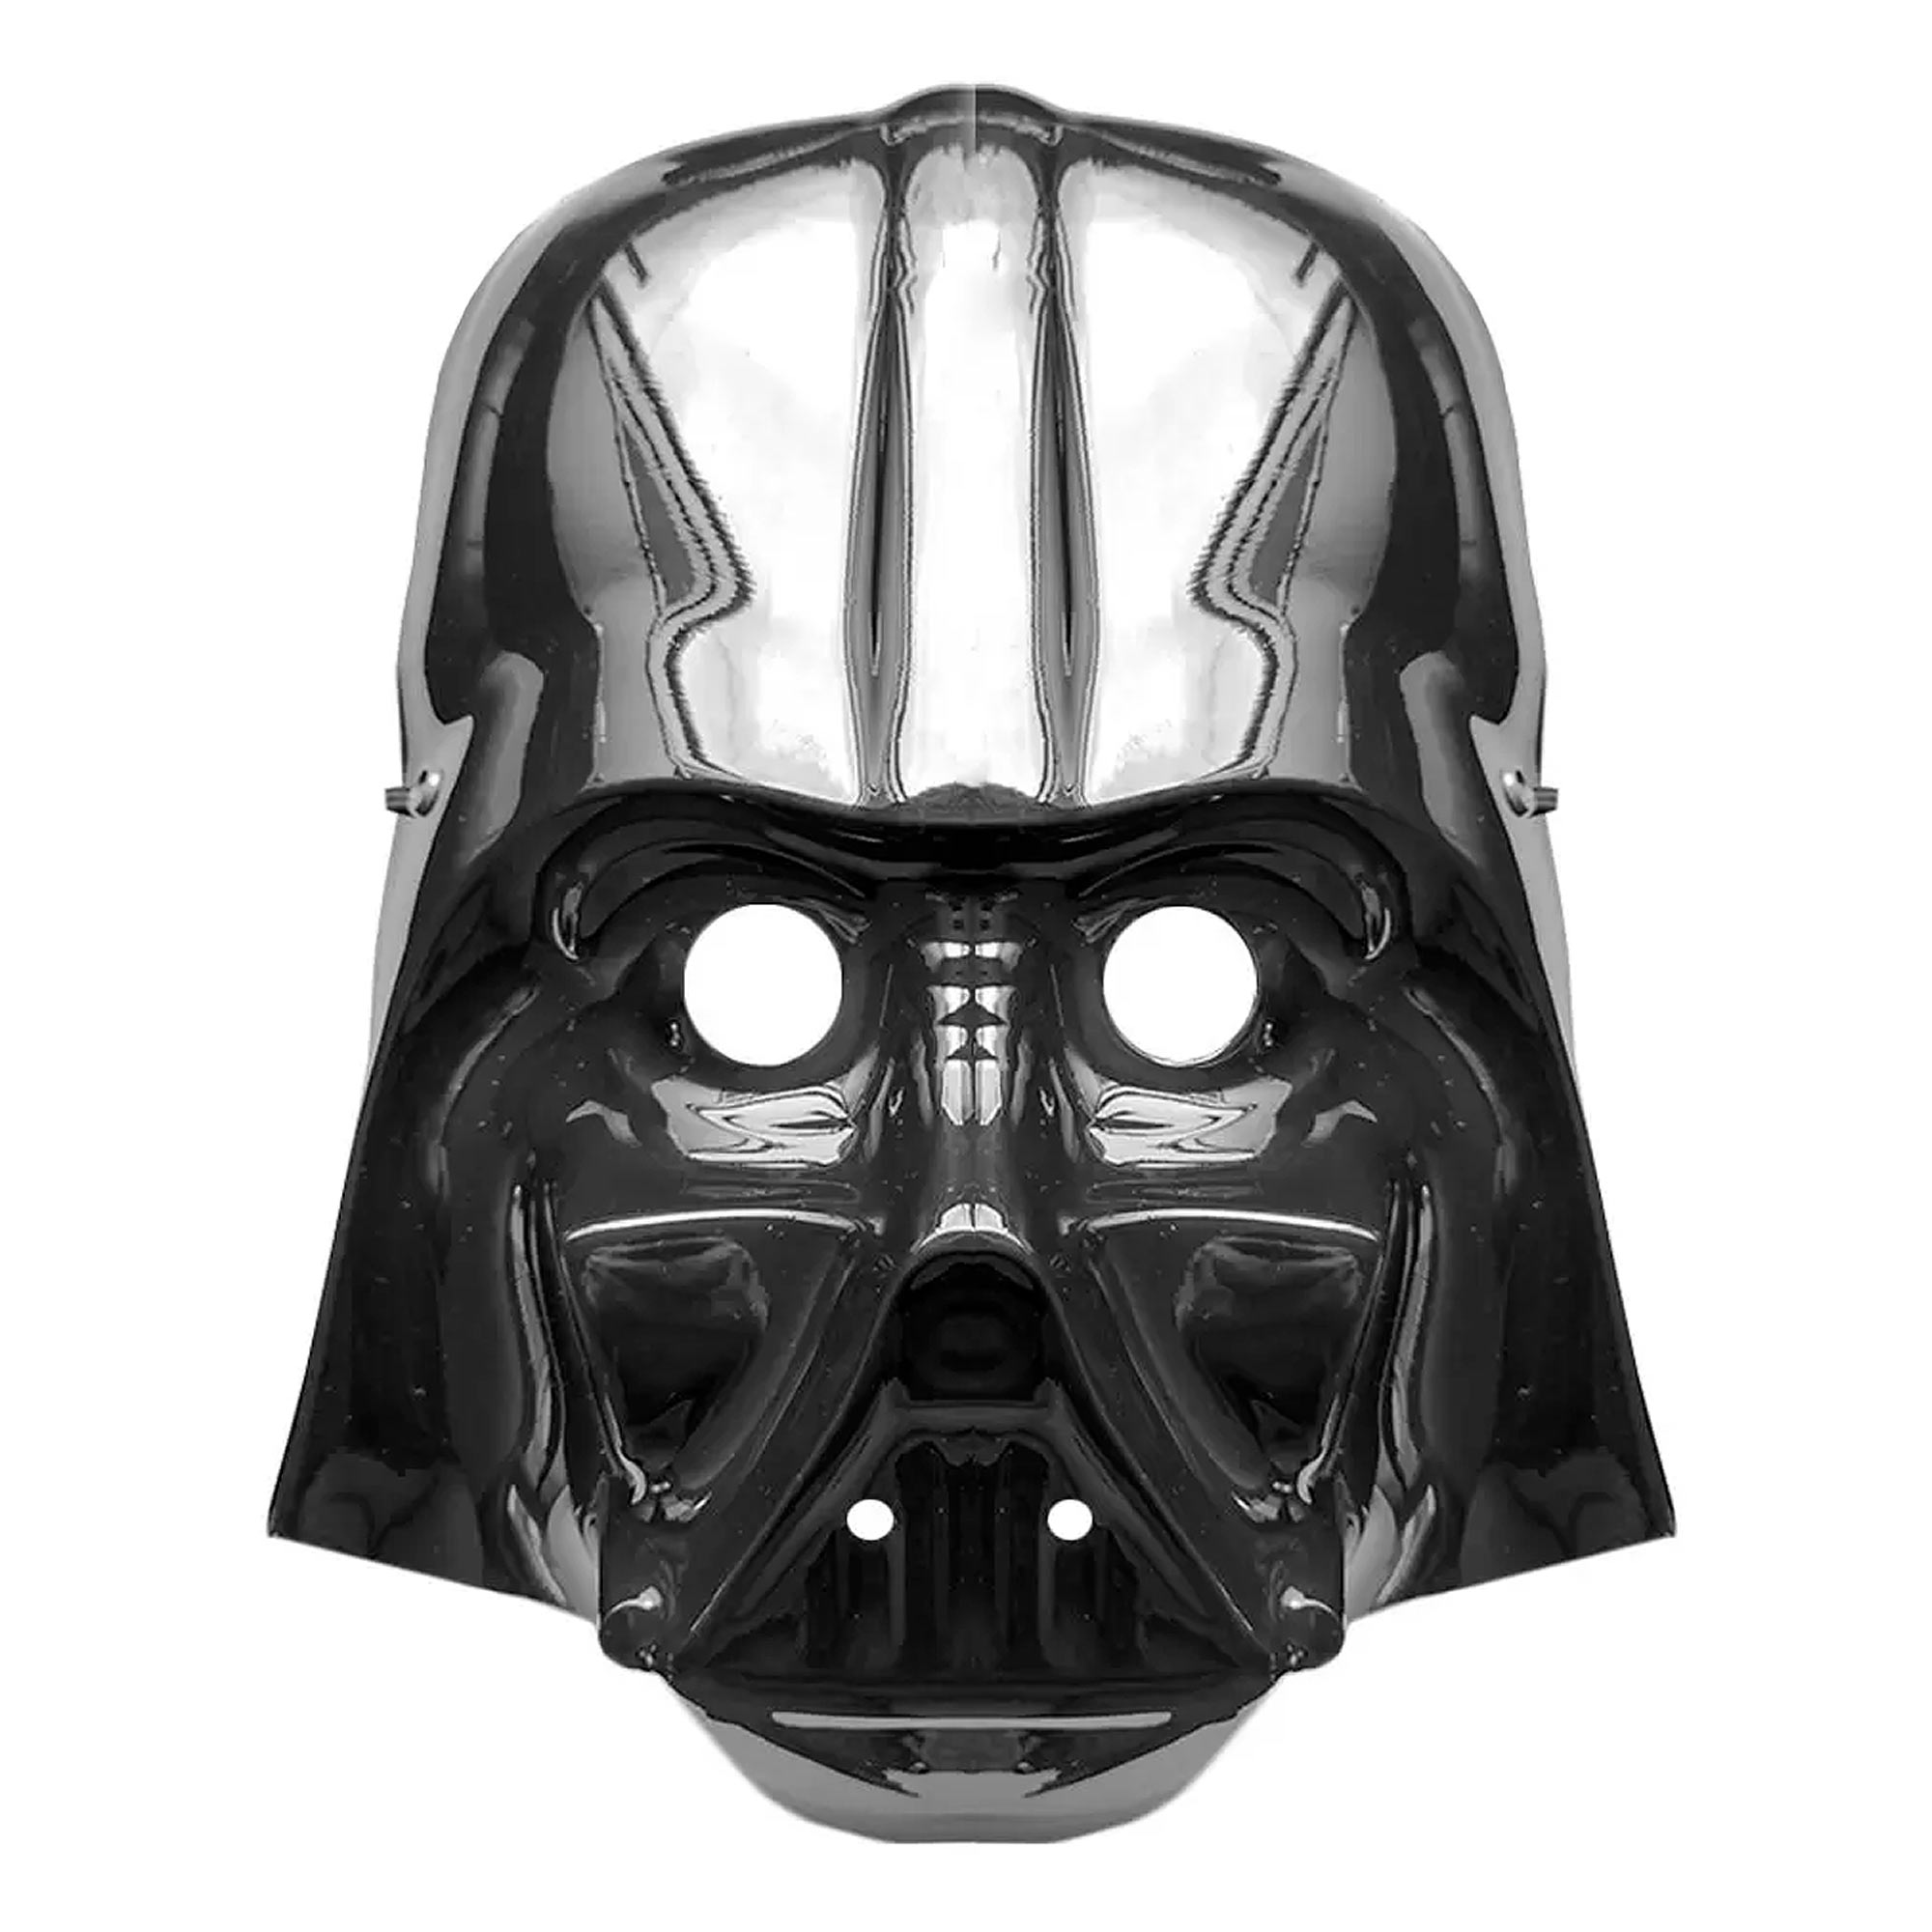 Máscara Darth Vader Star Wars de Plástico Adulta